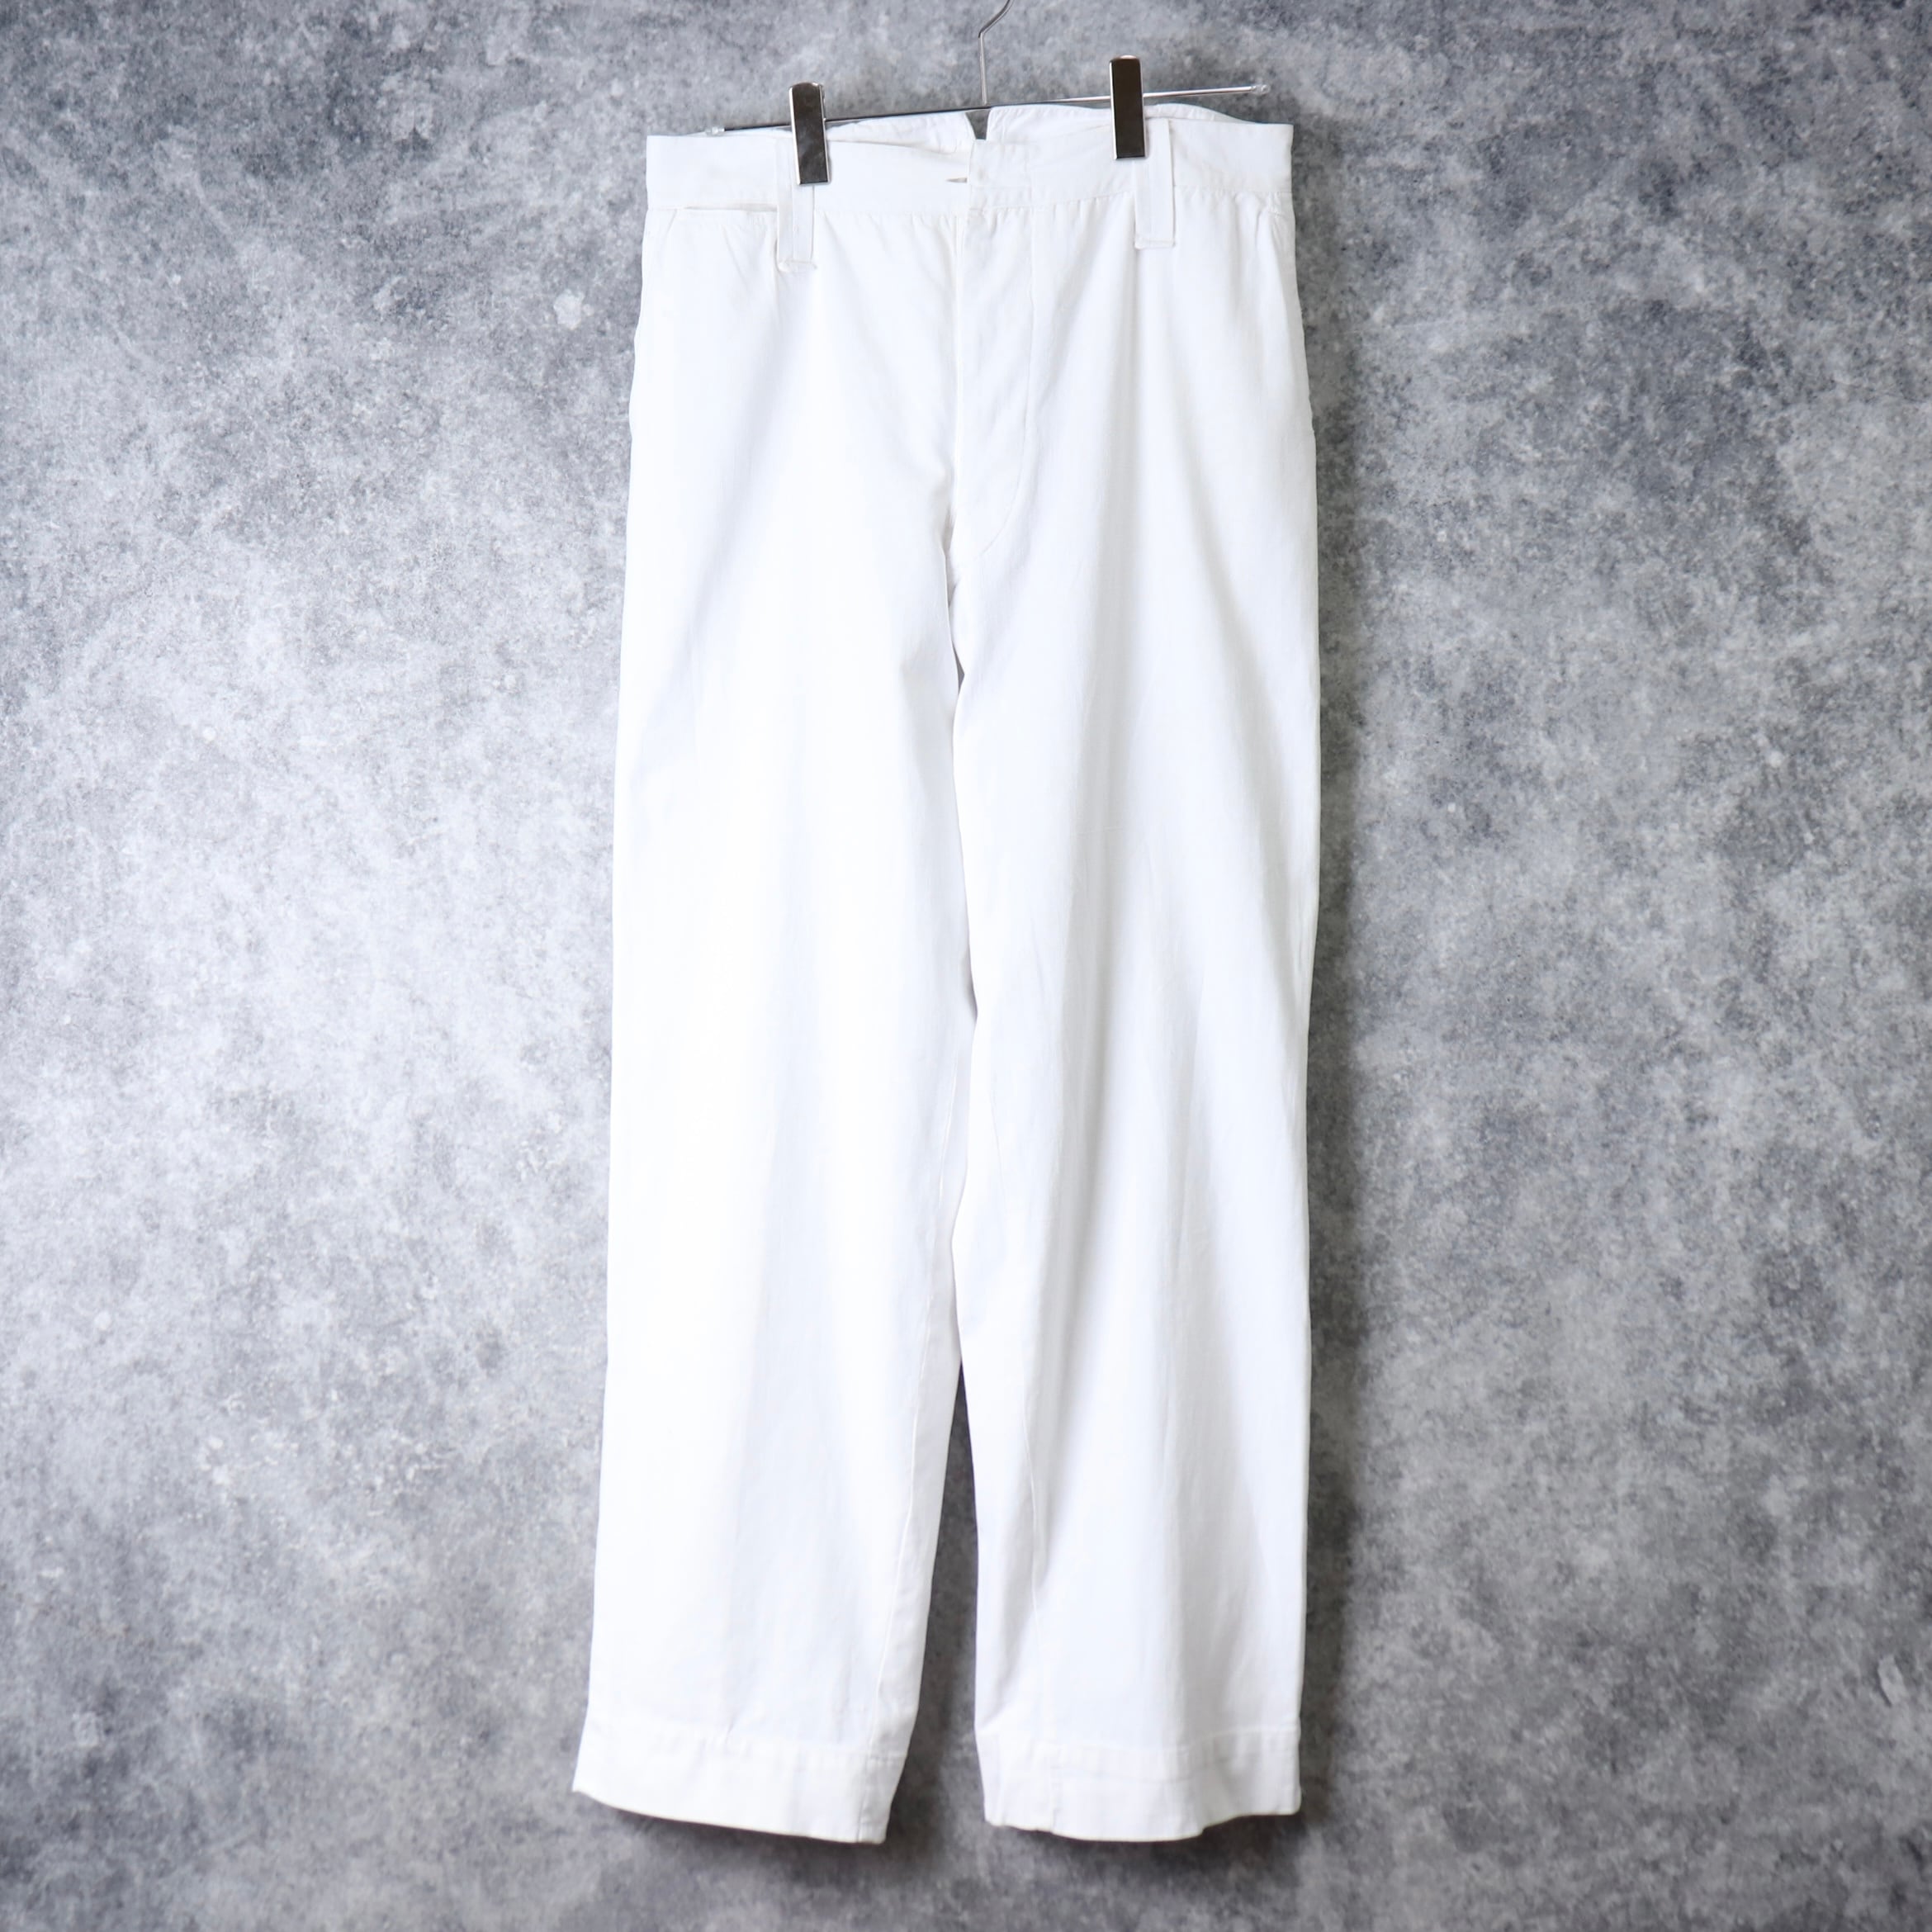 1910s White cotton Work pants W31.5 L31   B651